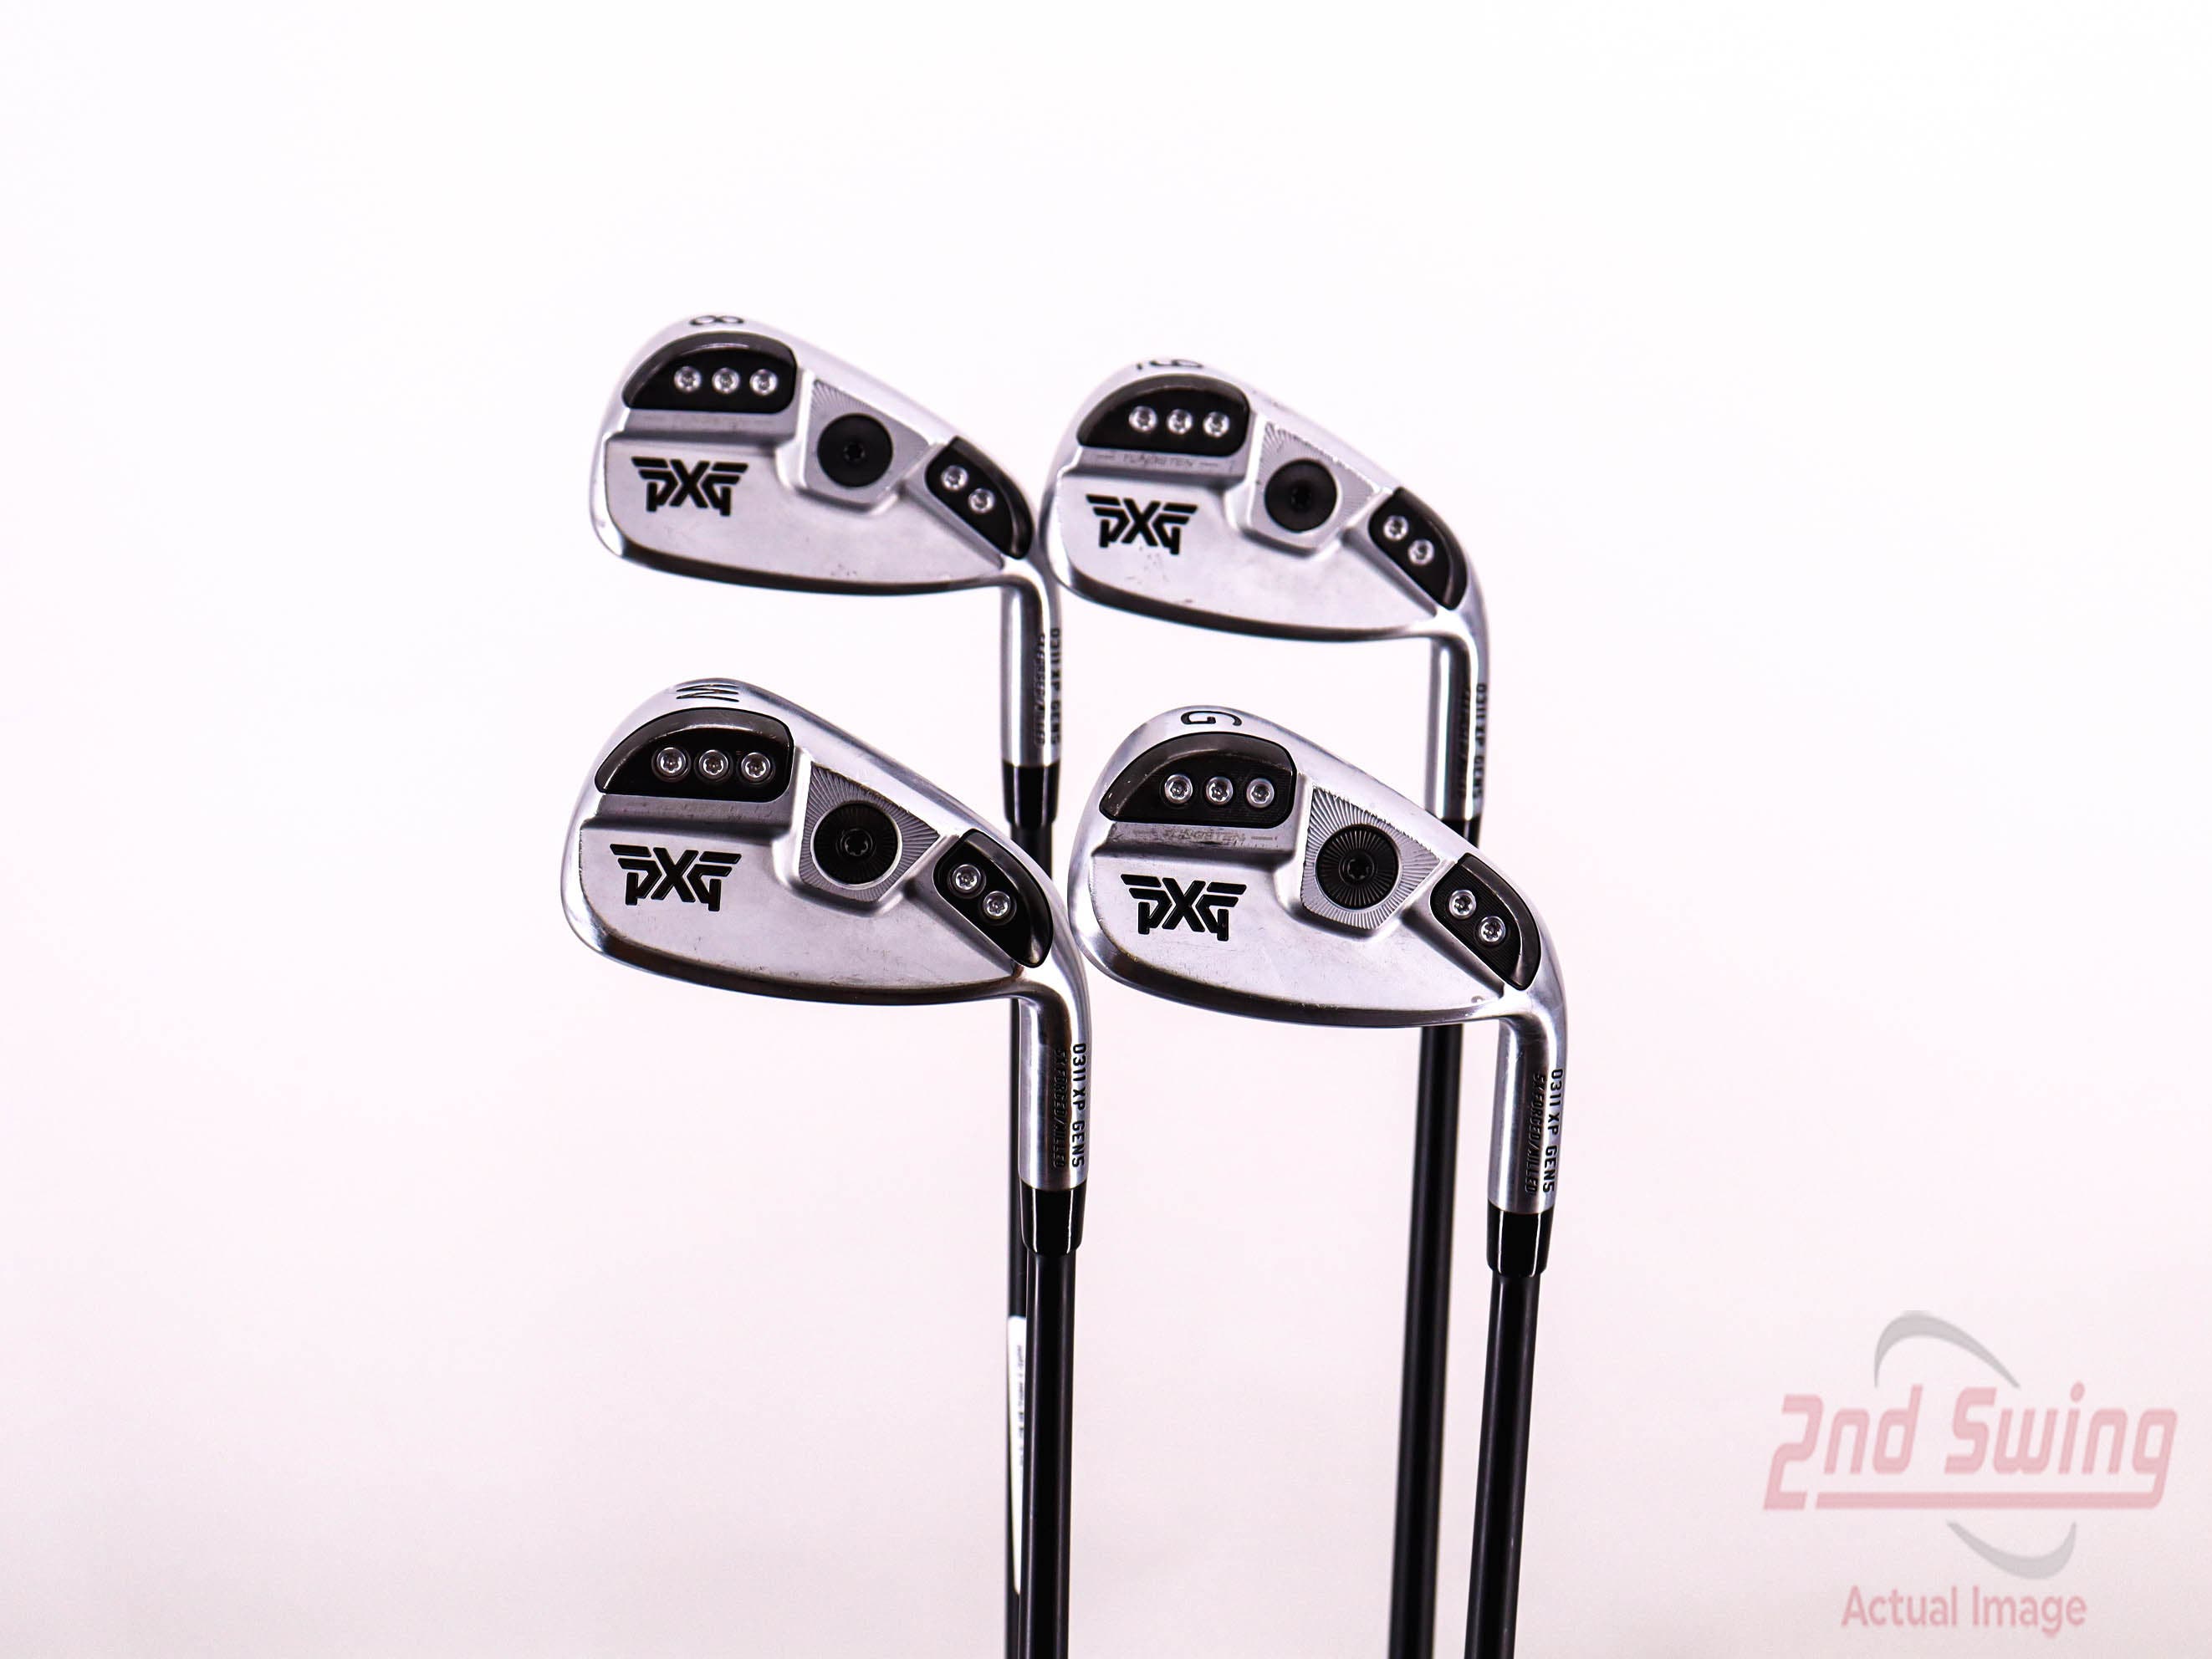 PXG 0311 XP GEN5 Chrome Iron Set | 2nd Swing Golf